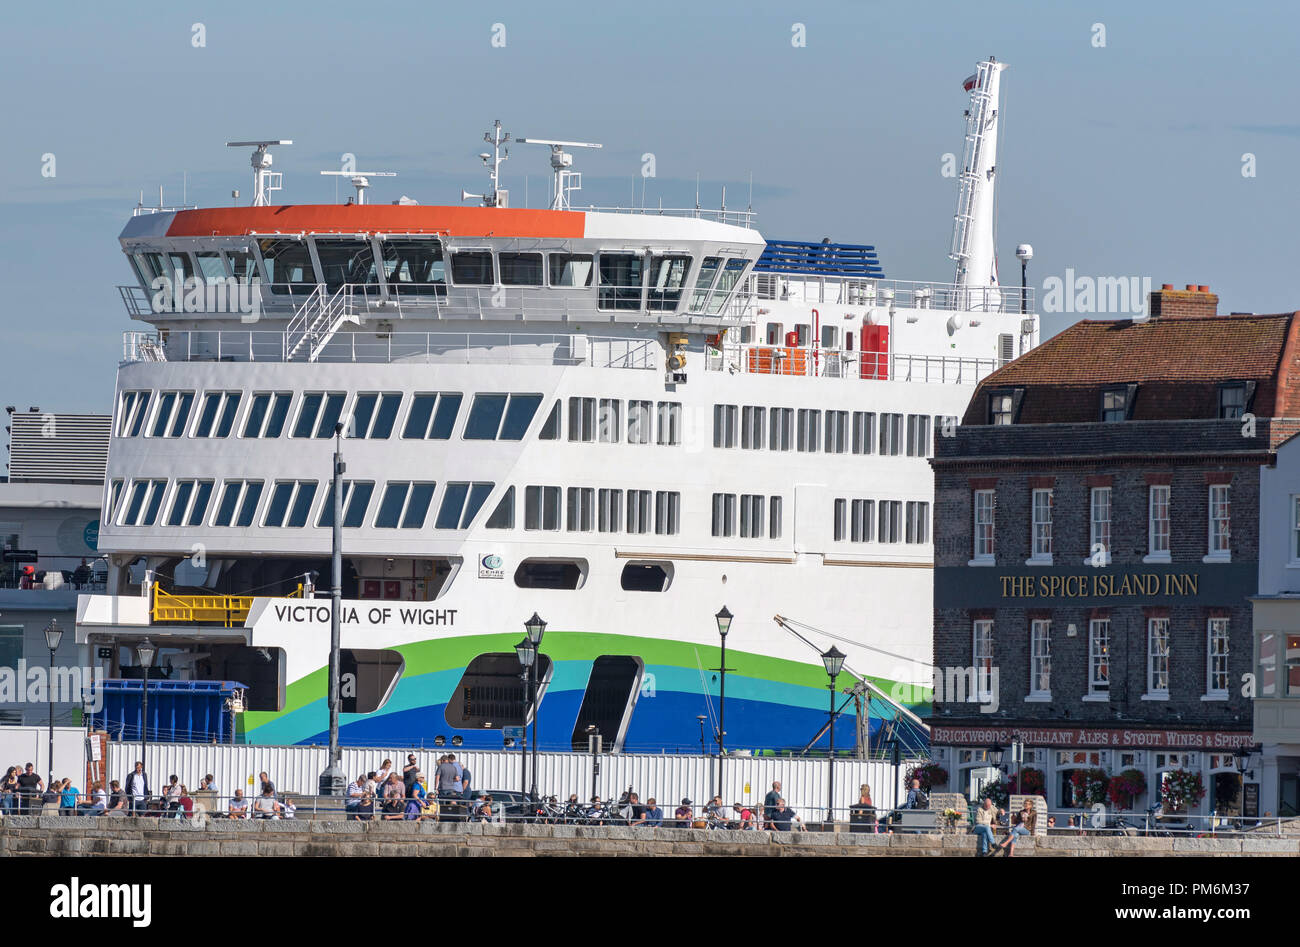 Victoria de Wight un nouveau ferry roro dwarfs the Spice Island Inn au bord de l'eau en vieux Portsmouth, Angleterre, Royaume-Uni Banque D'Images